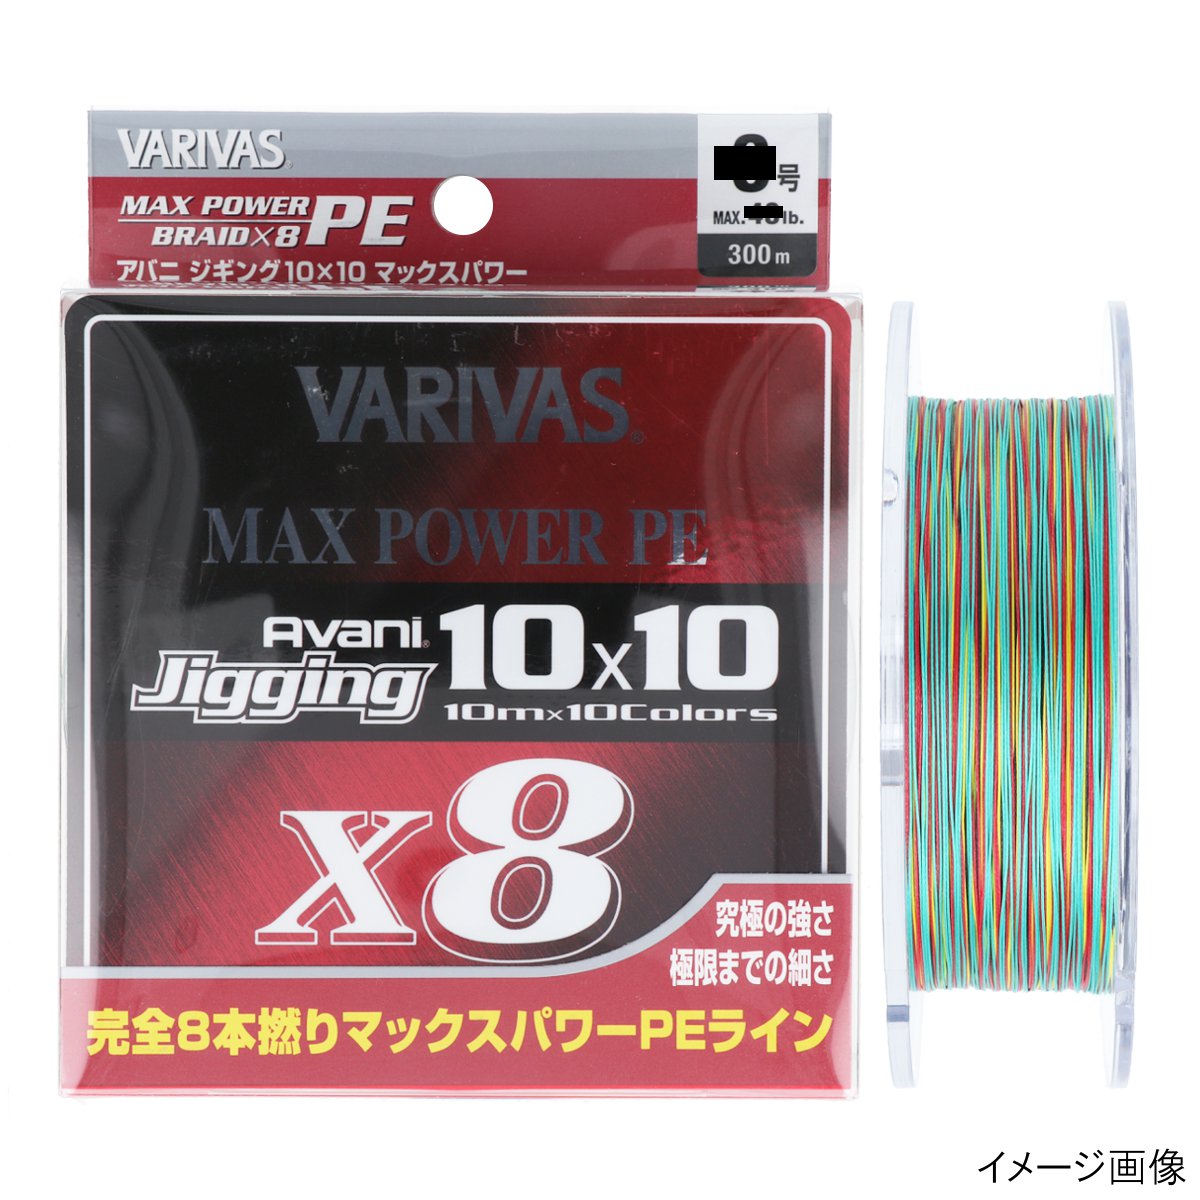  バリバス VARIVAS アバニ ジギング10×10 マックスパワーPE X8 300m 1号